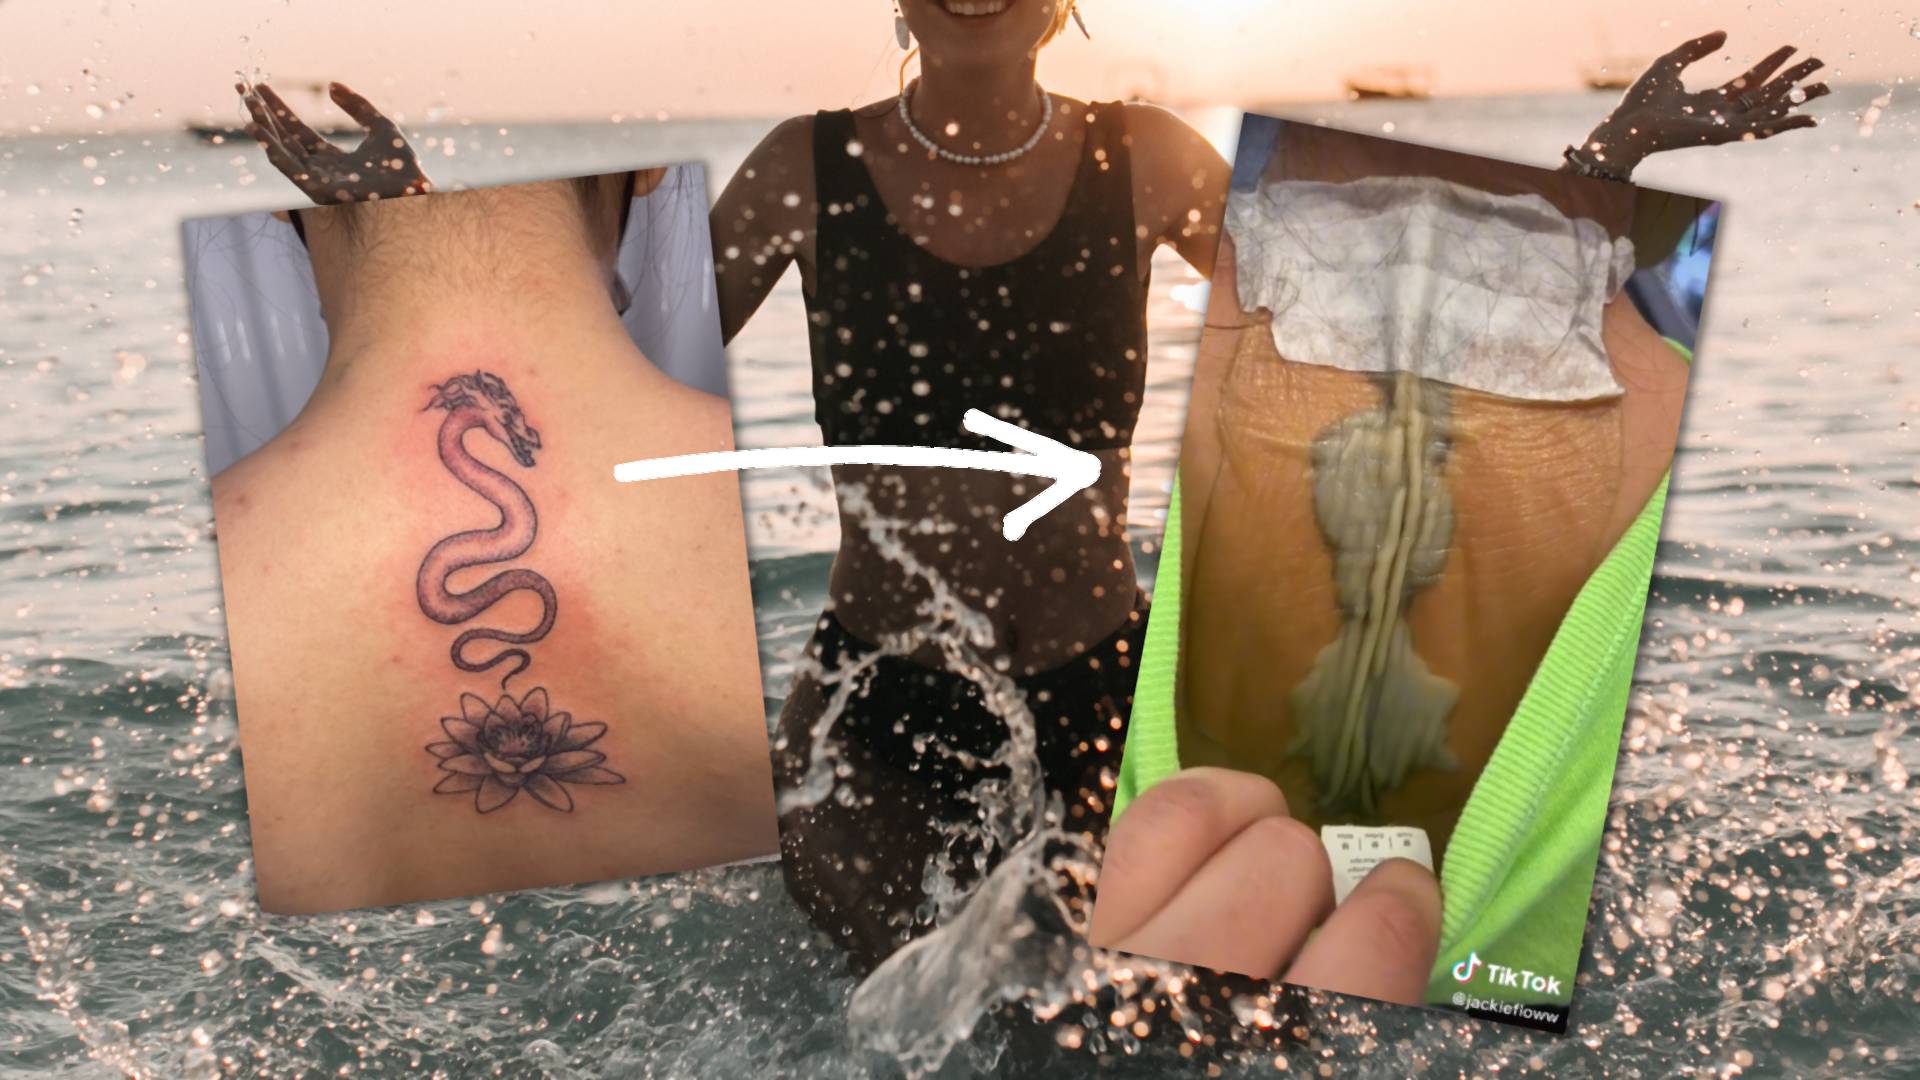 Wystawiła świeży tatuaż na słońce i kąpała się w morzu. Oto efekty